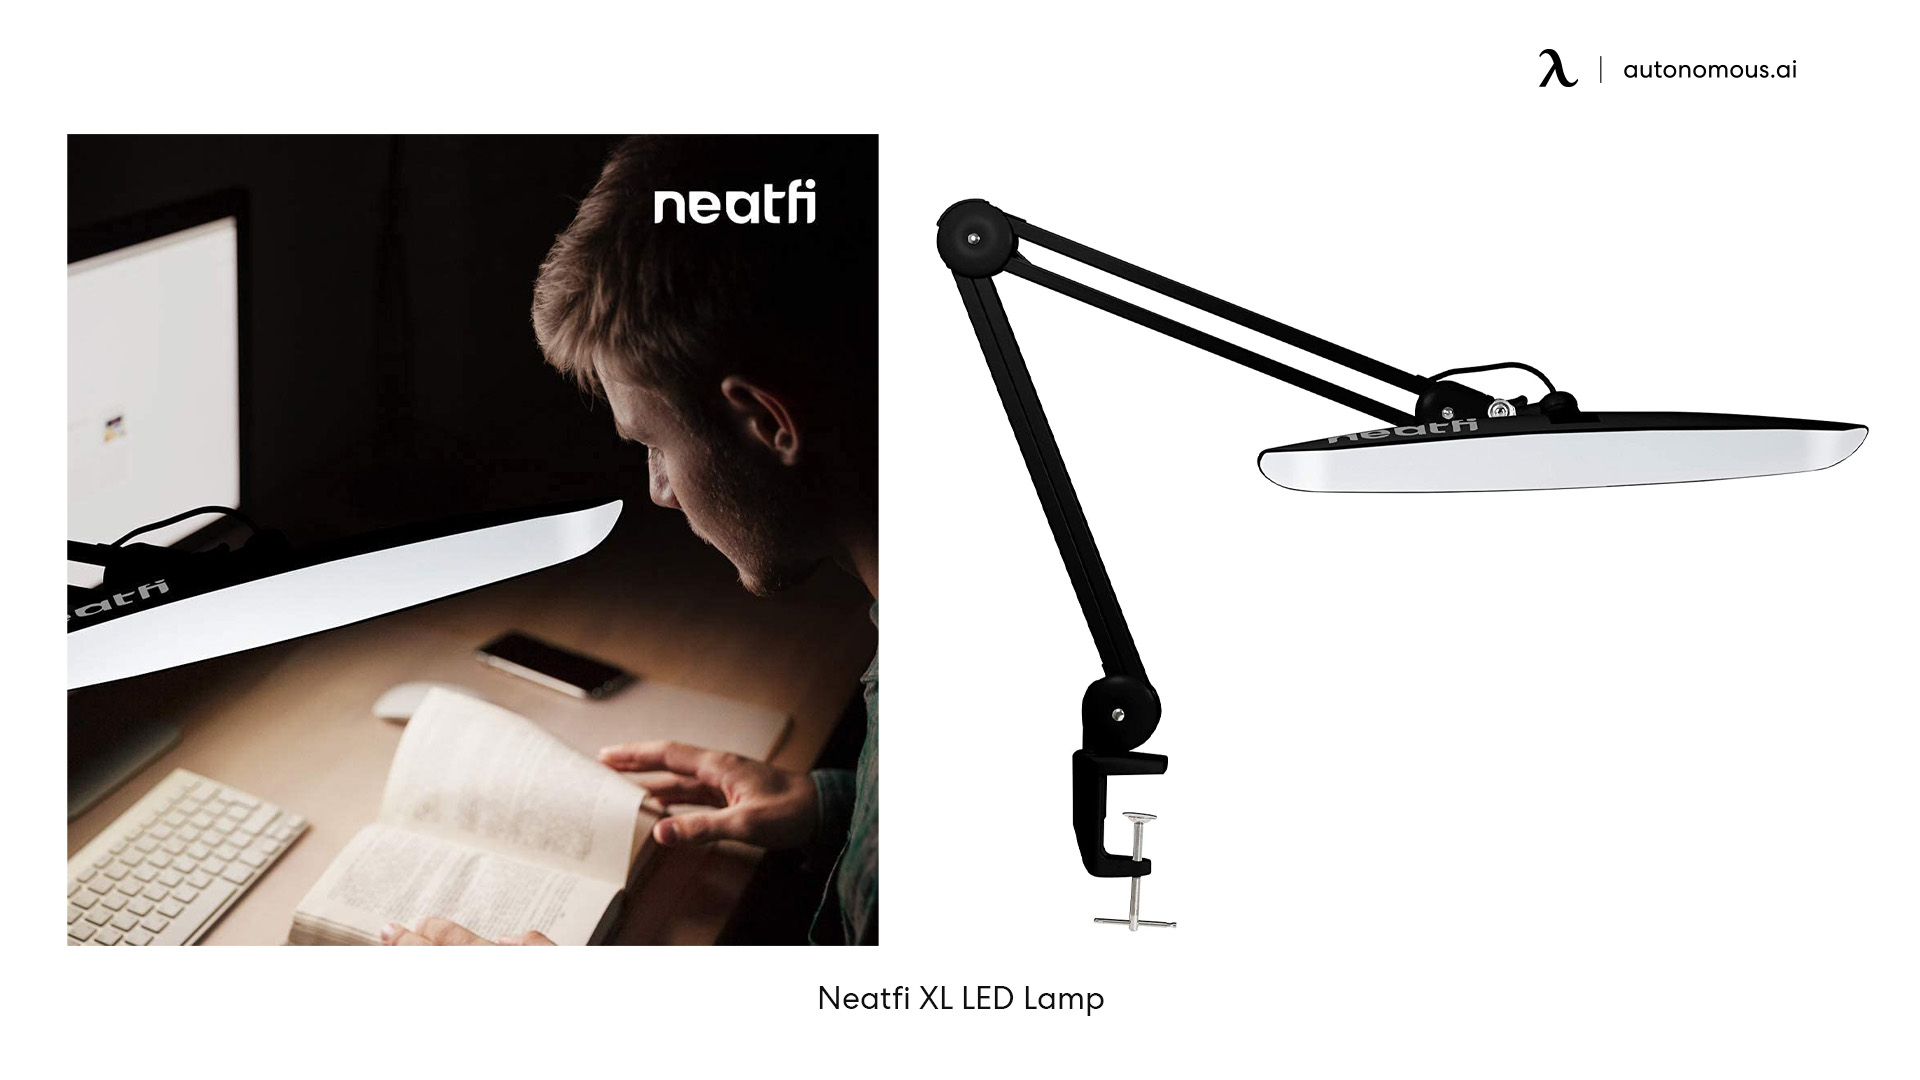 Neatfi XL LED Lamp